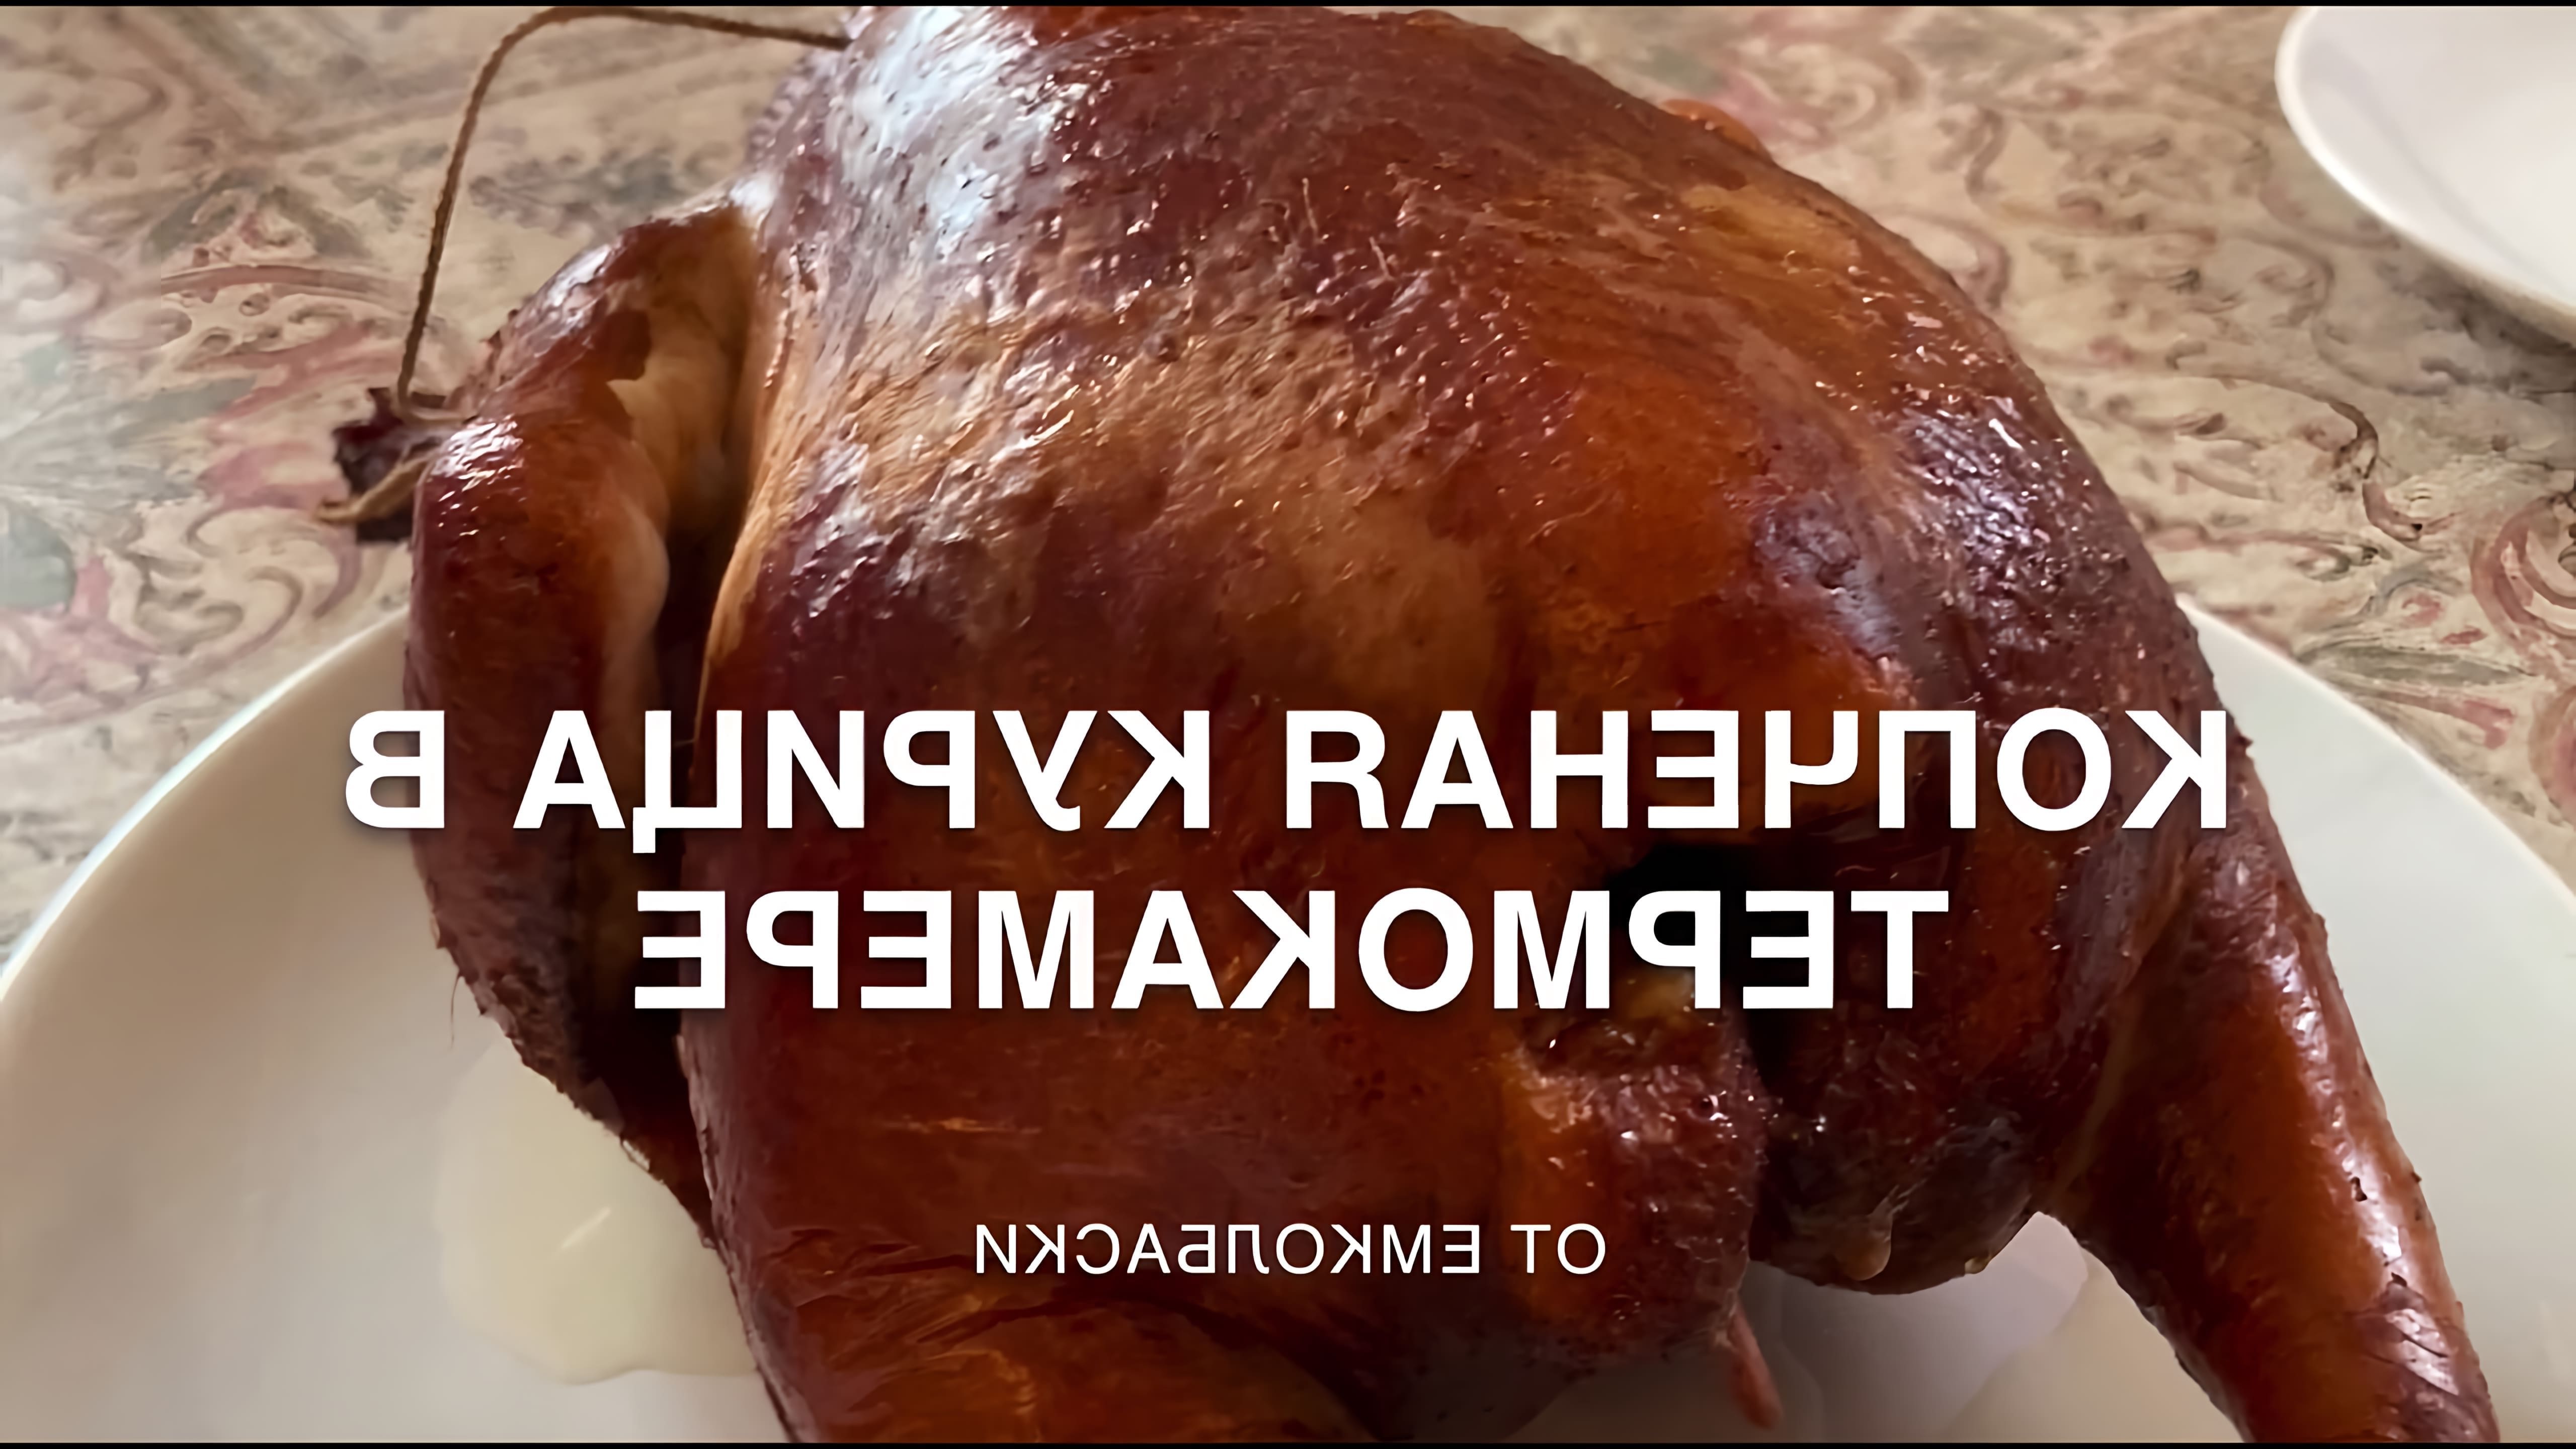 В этом видео-ролике показан процесс приготовления копченой курицы в термокамере емколбаски